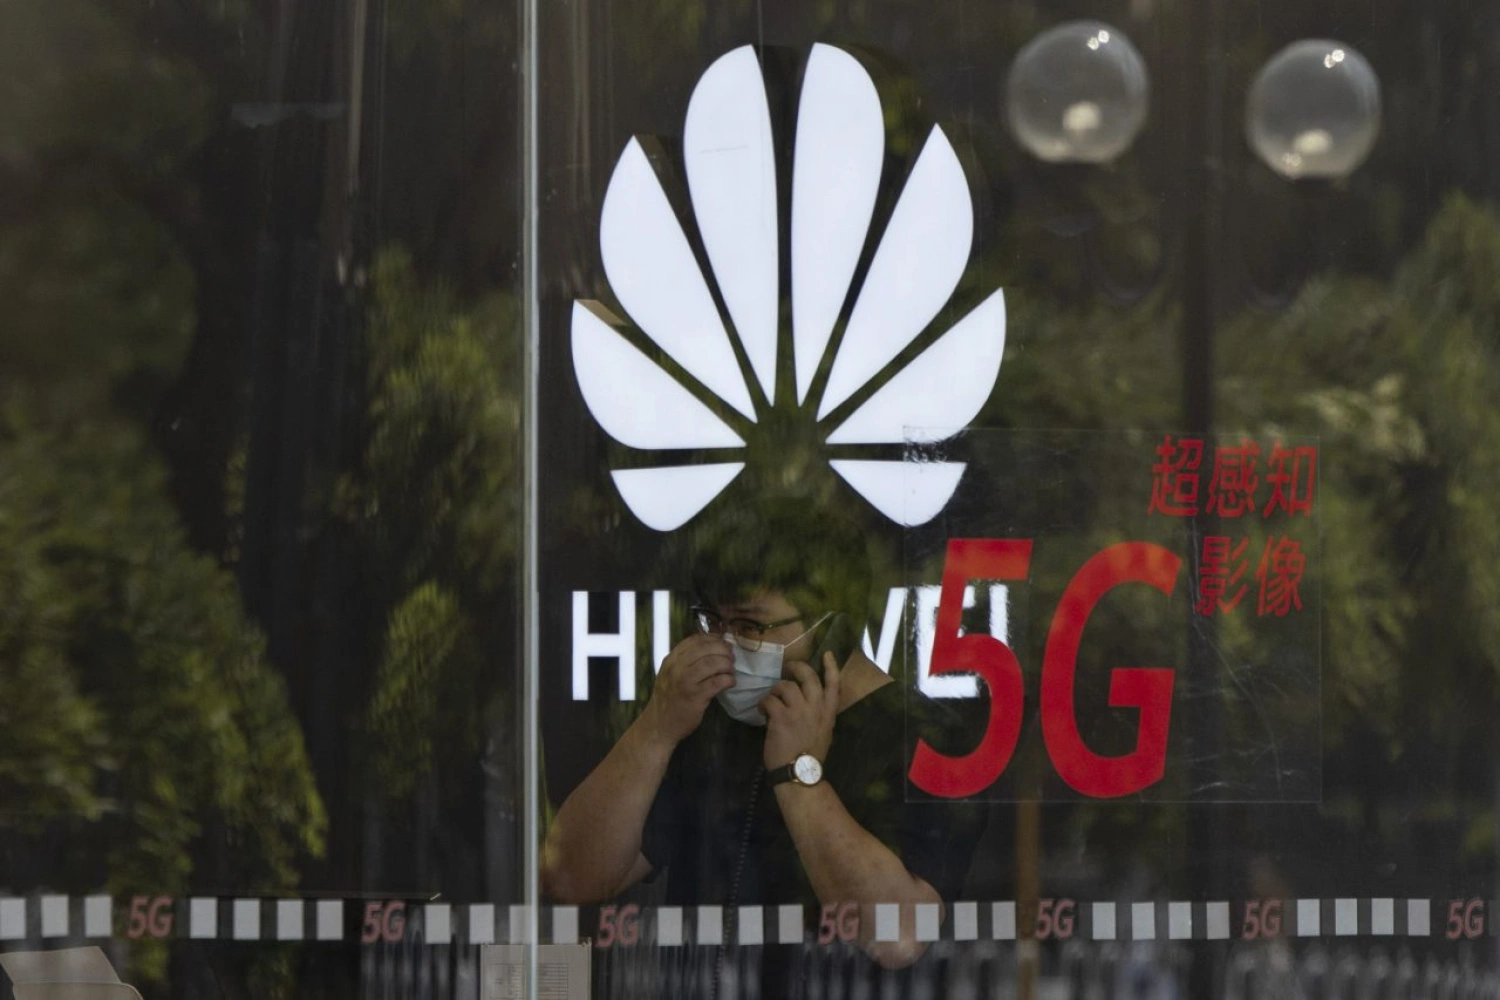 Prvý závod mimo Číny: Huawei rozširuje svoju výrobu aj do Európy